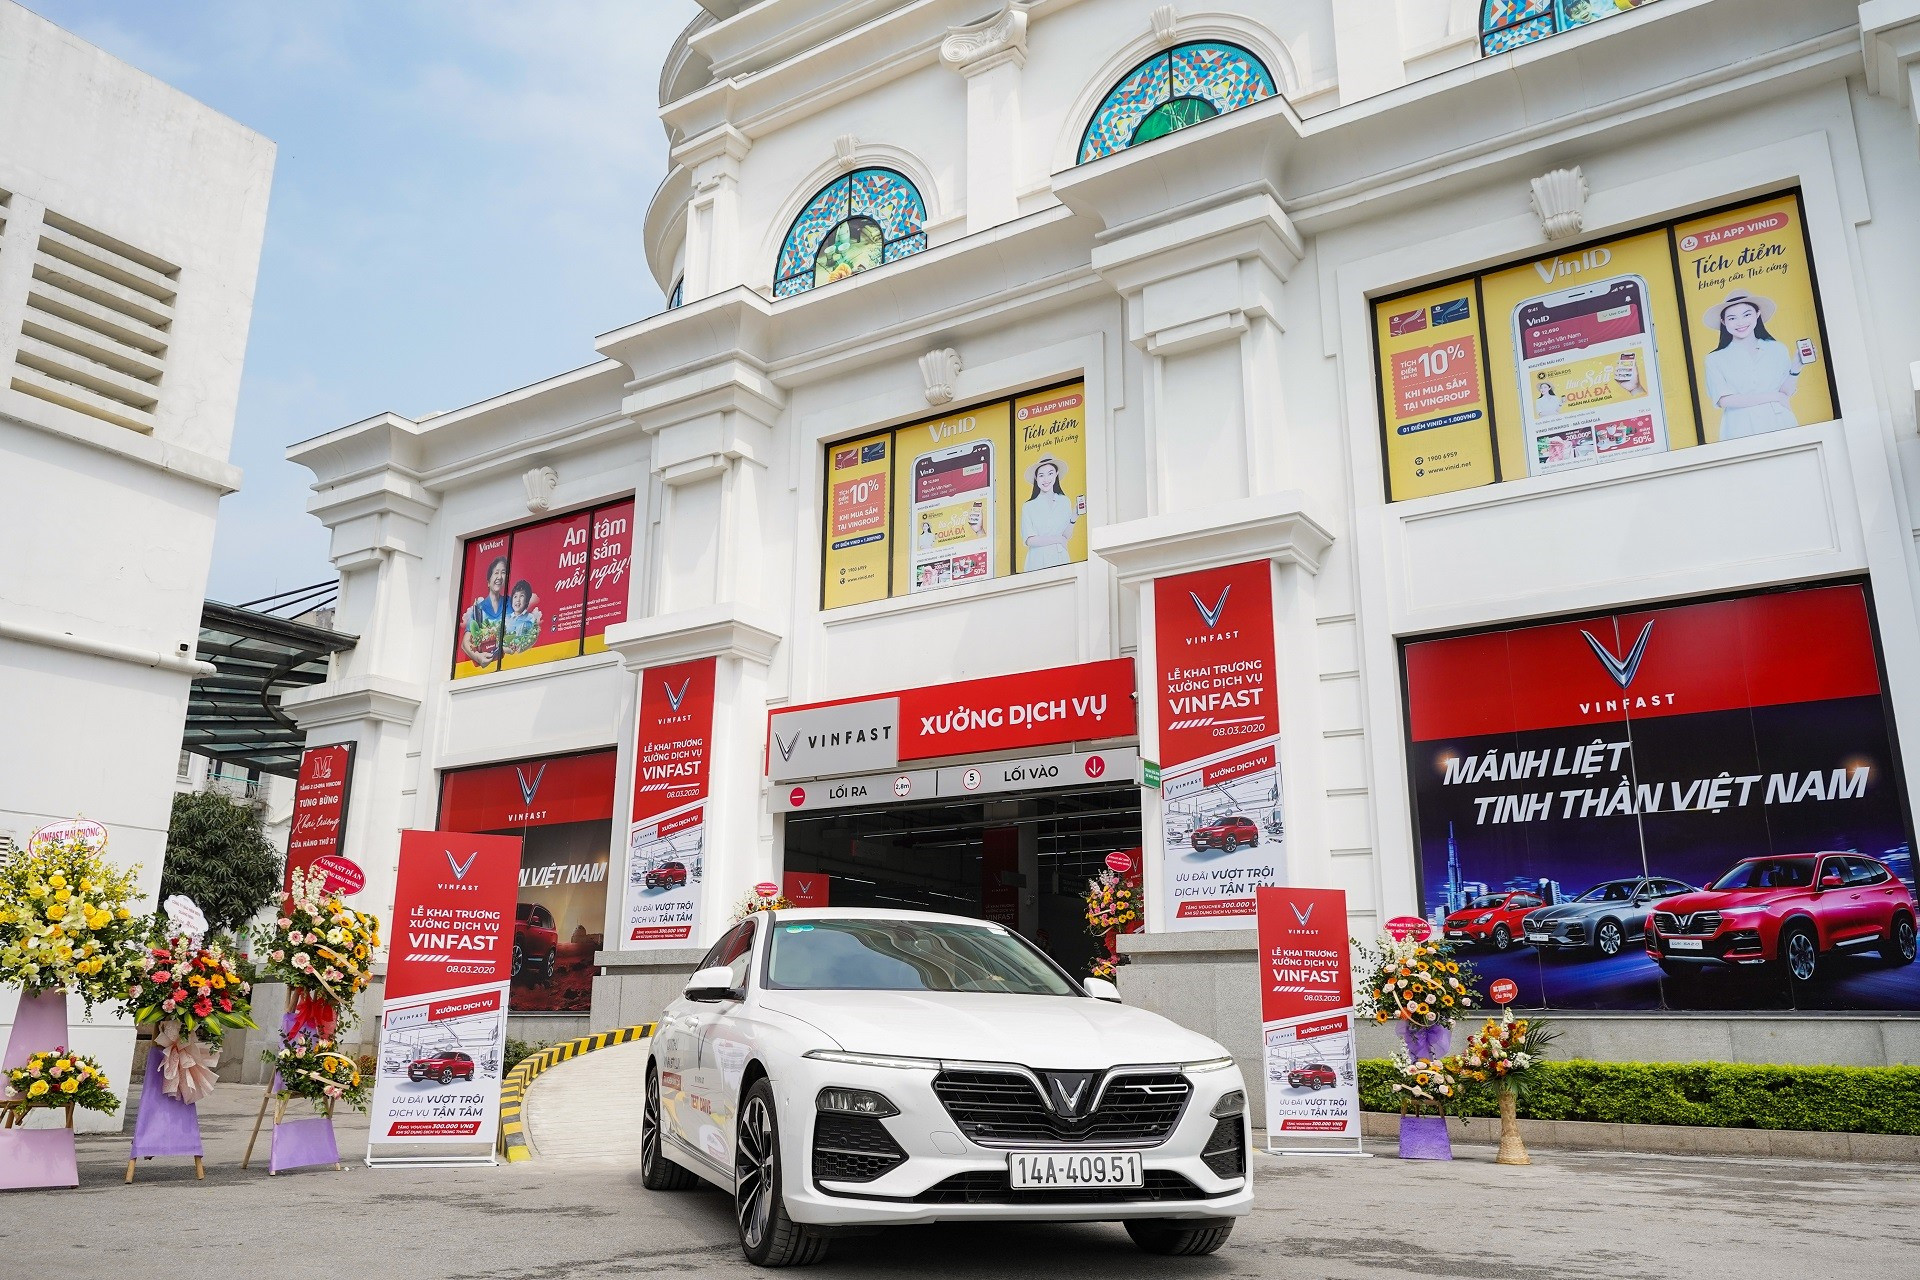 Đến cuối năm 2020, VinFast sẽ trở thành hãng xe duy nhất trên thị trường có điểm bảo hành, sửa chữa xe ở tất cả các tỉnh thành, hướng tới mục tiêu là hãng xe chăm sóc khách hàng tốt nhất Việt Nam.